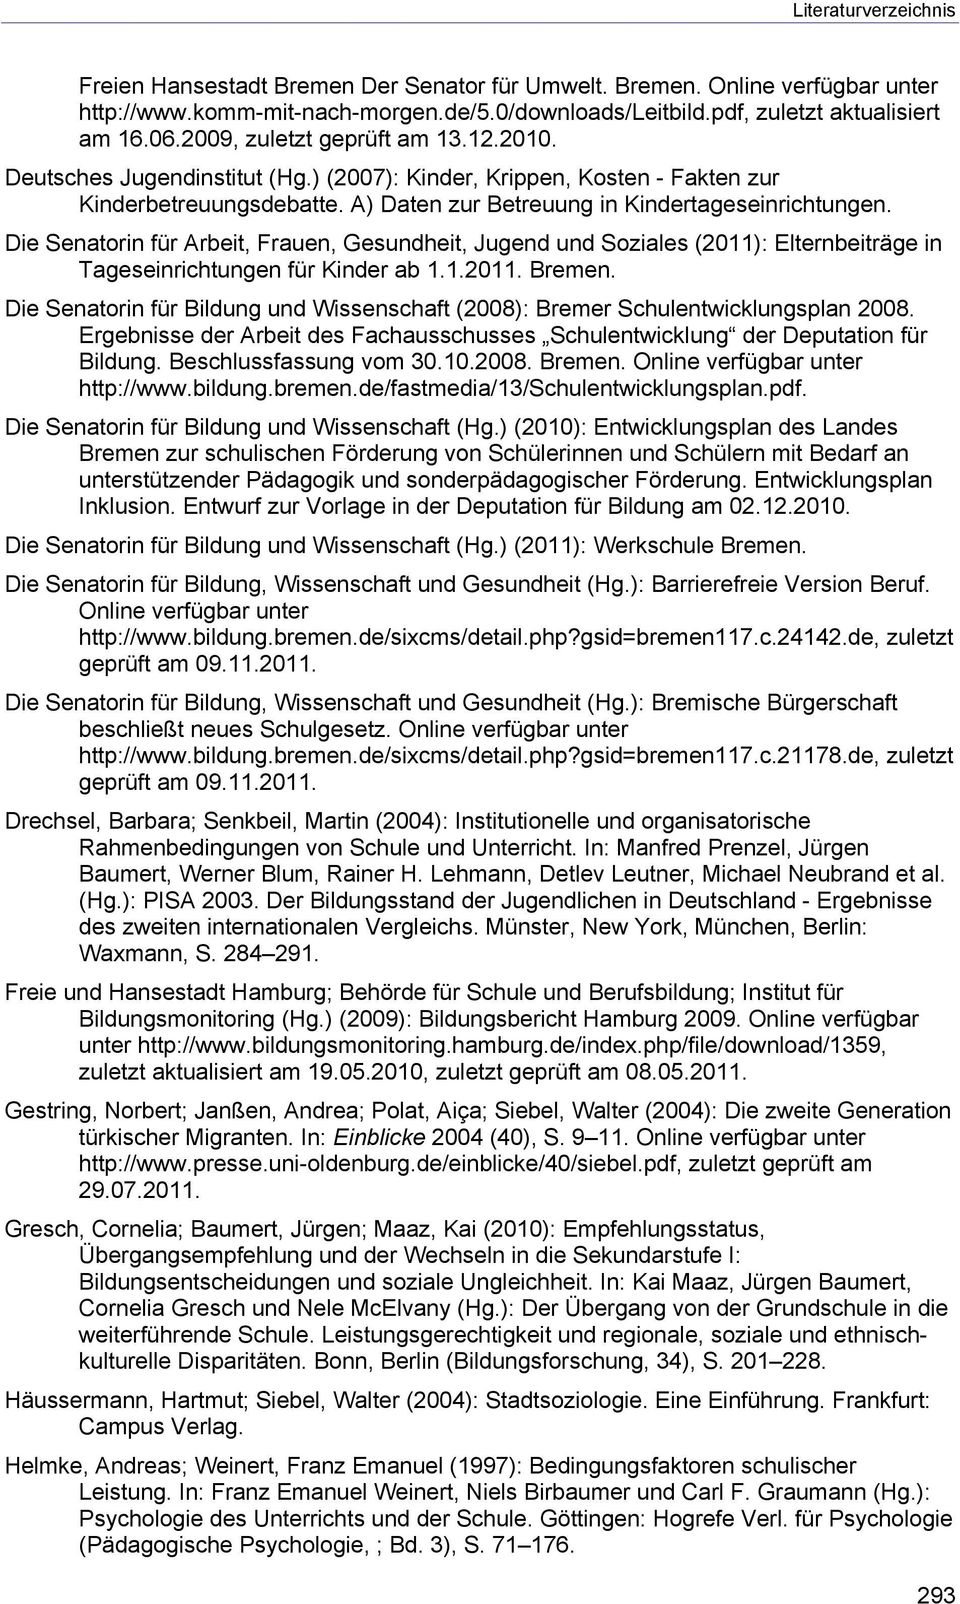 Die Senatorin für Arbeit, Frauen, Gesundheit, Jugend und Soziales (2011): Elternbeiträge in Tageseinrichtungen für Kinder ab 1.1.2011. Bremen.